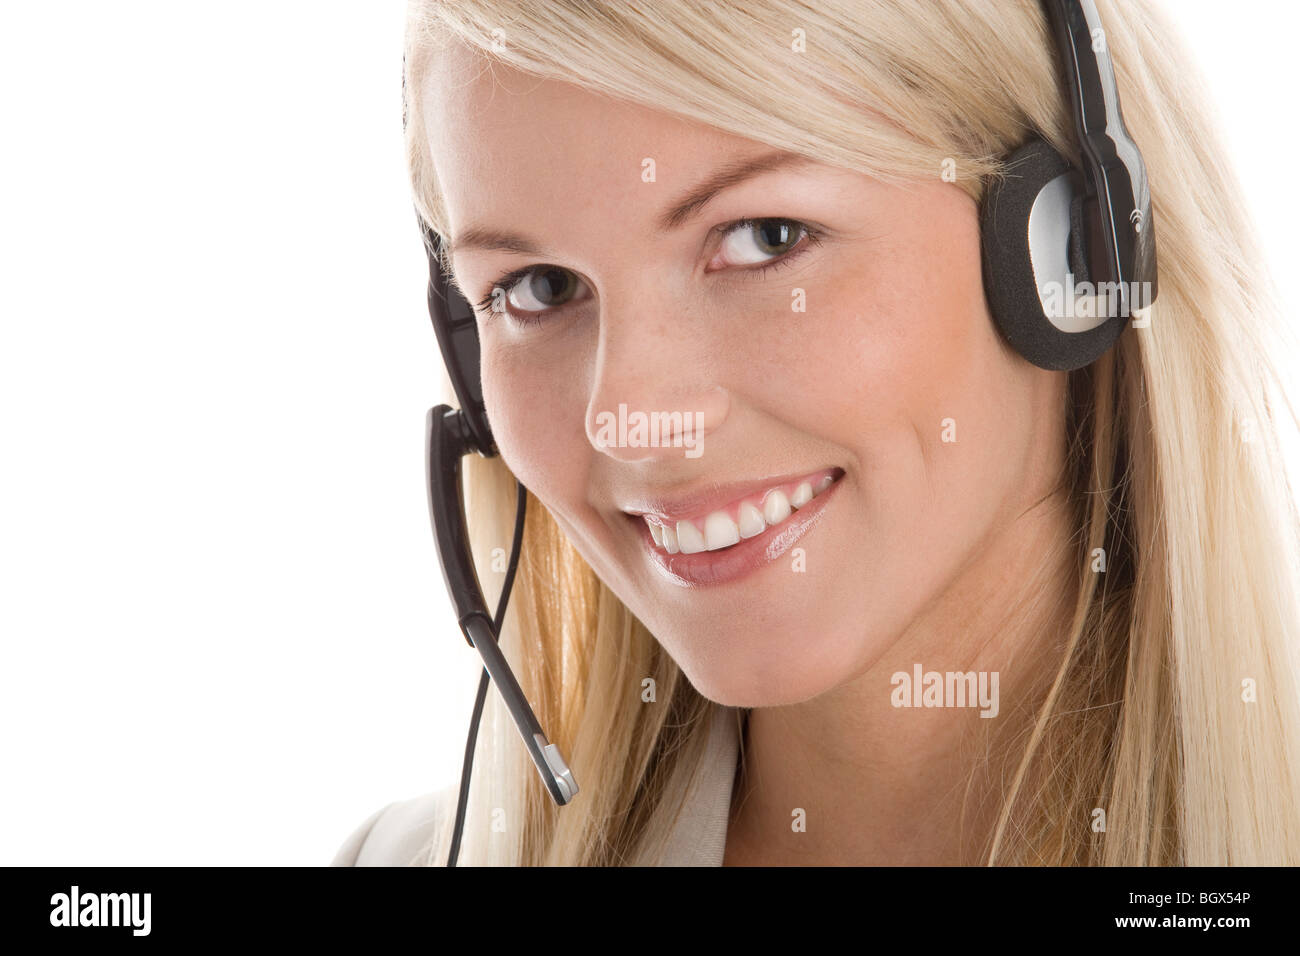 Ritratto di attraente segretario/operatore telefonico che indossa la cuffia isolati su sfondo bianco Foto Stock